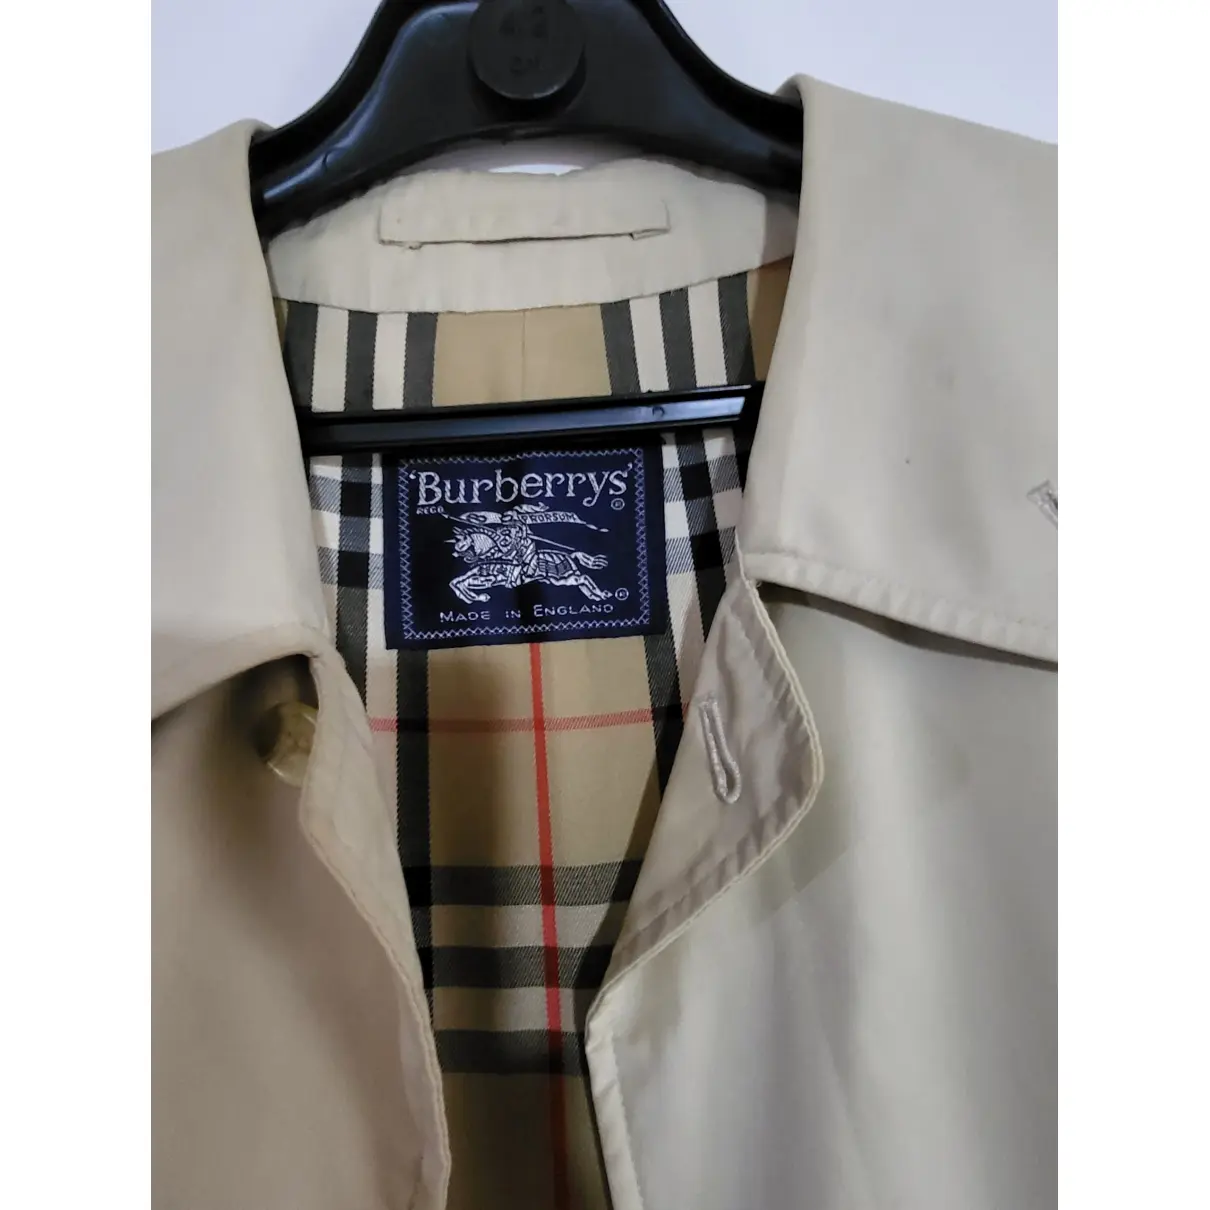 Buy Burberry Trenchcoat online